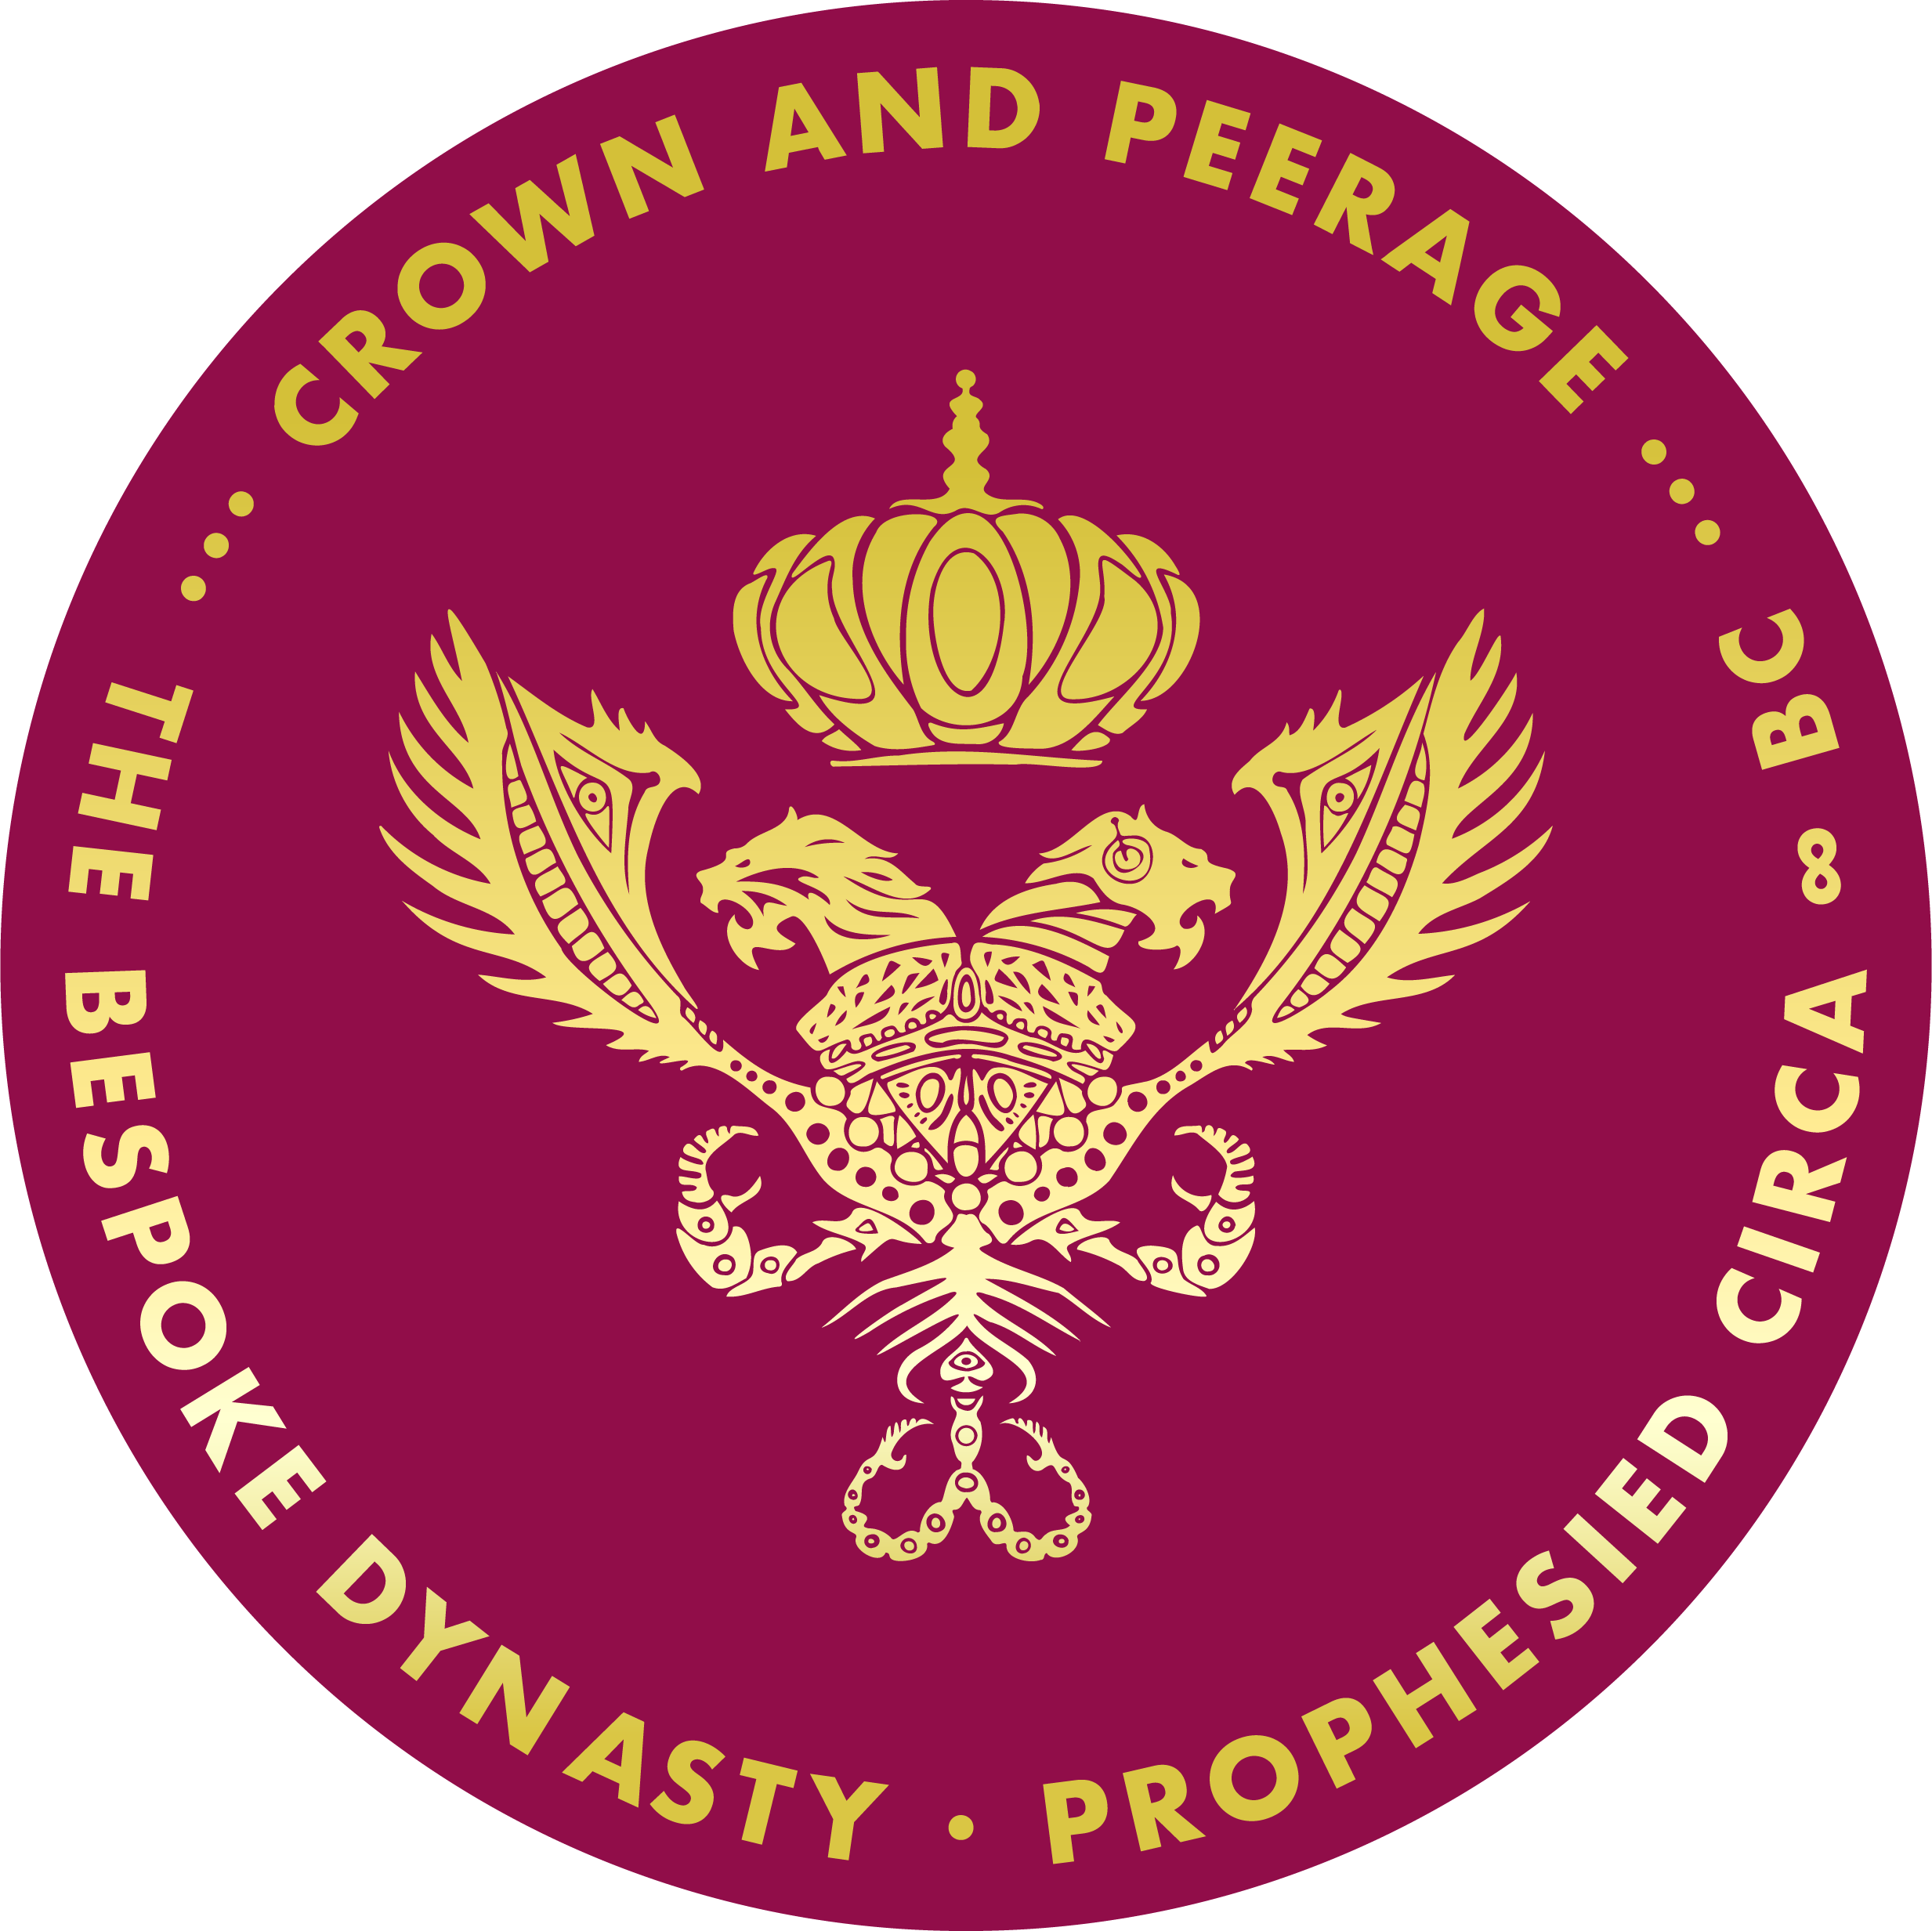 Crown and Peerage